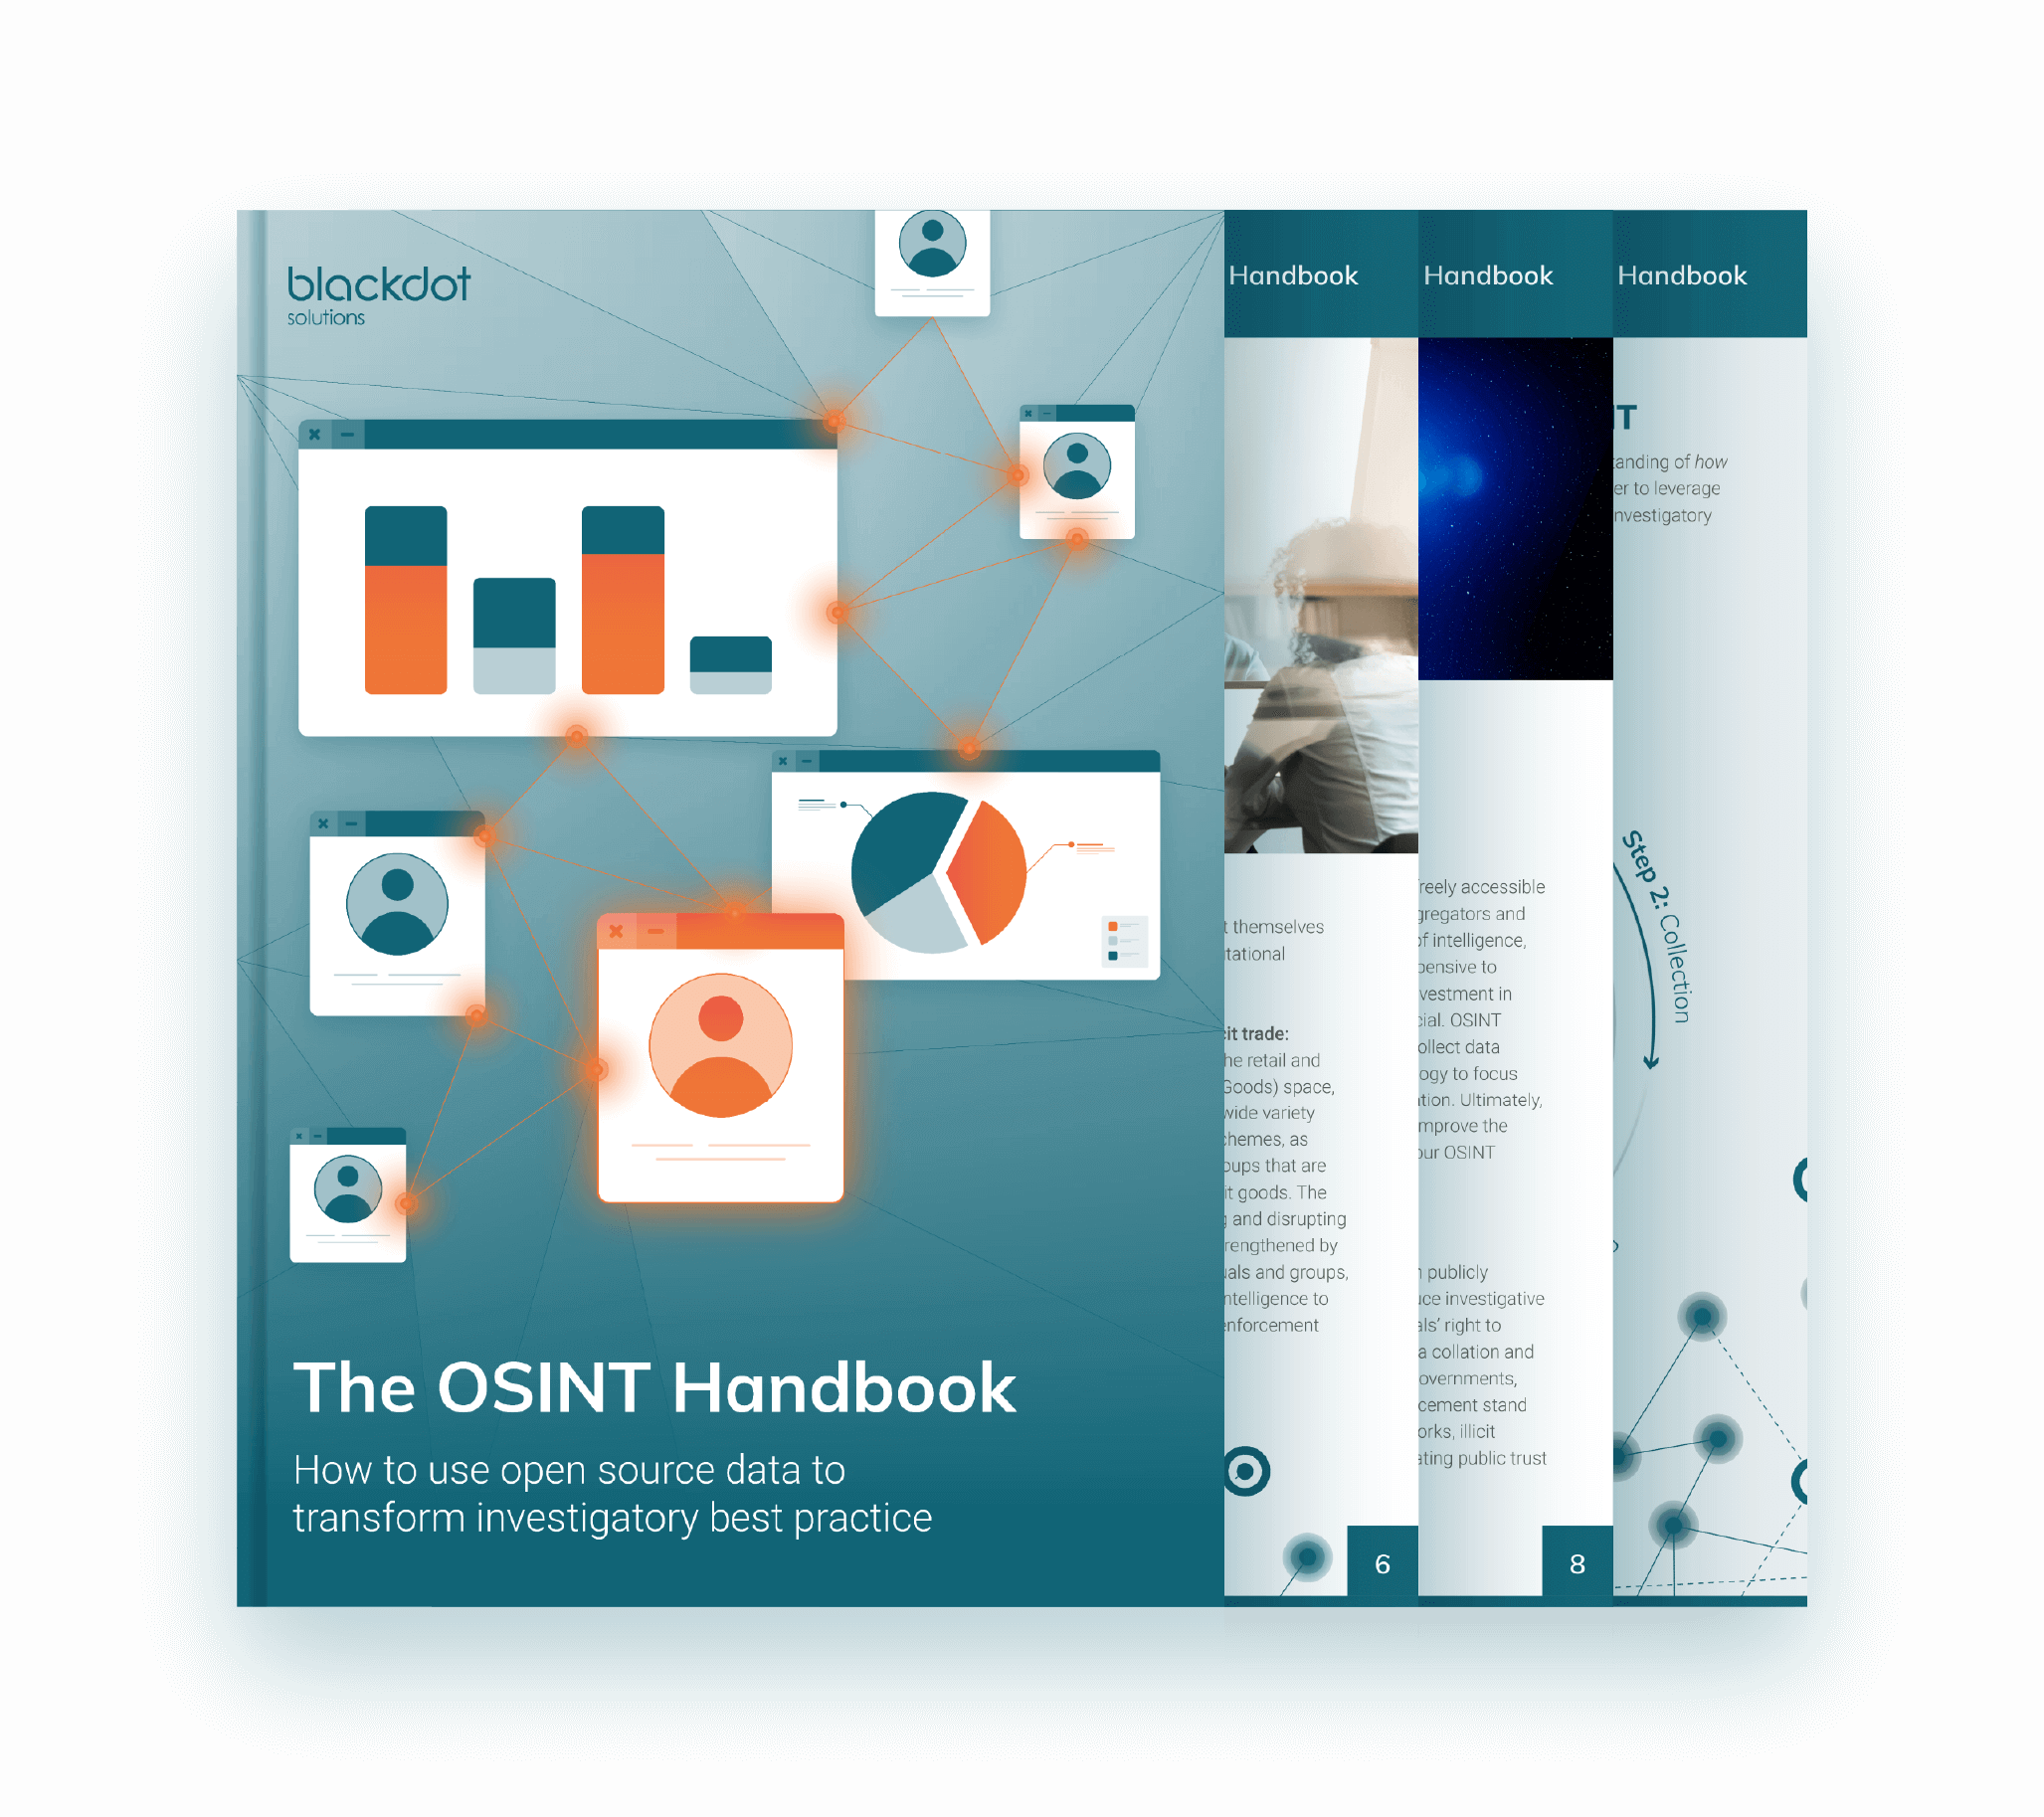 The OSINT Handbook